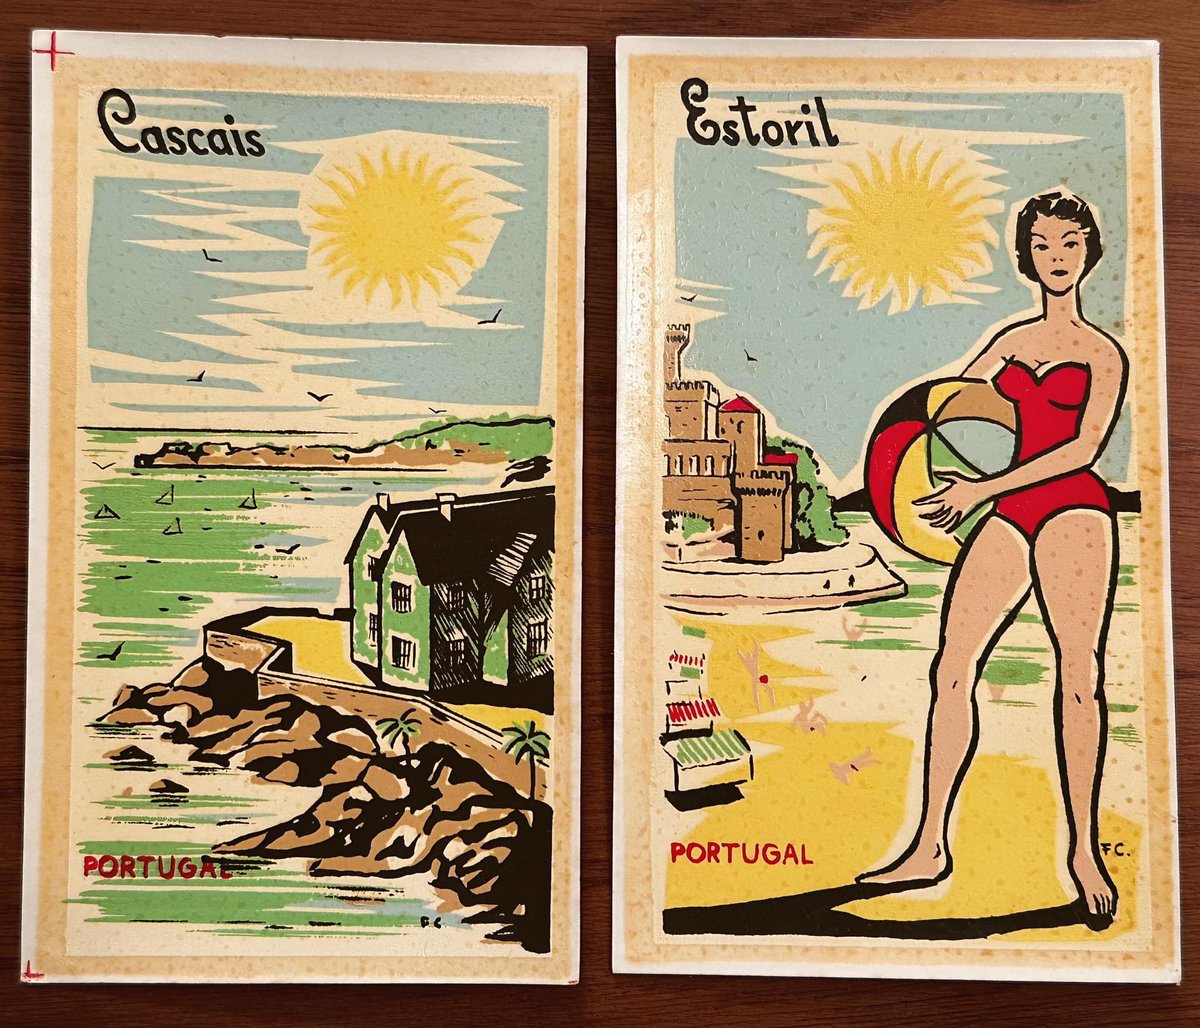 Autocolantes dos anos 70, talvez cópias de cartazes mais antigos
#Cascais #Estoril